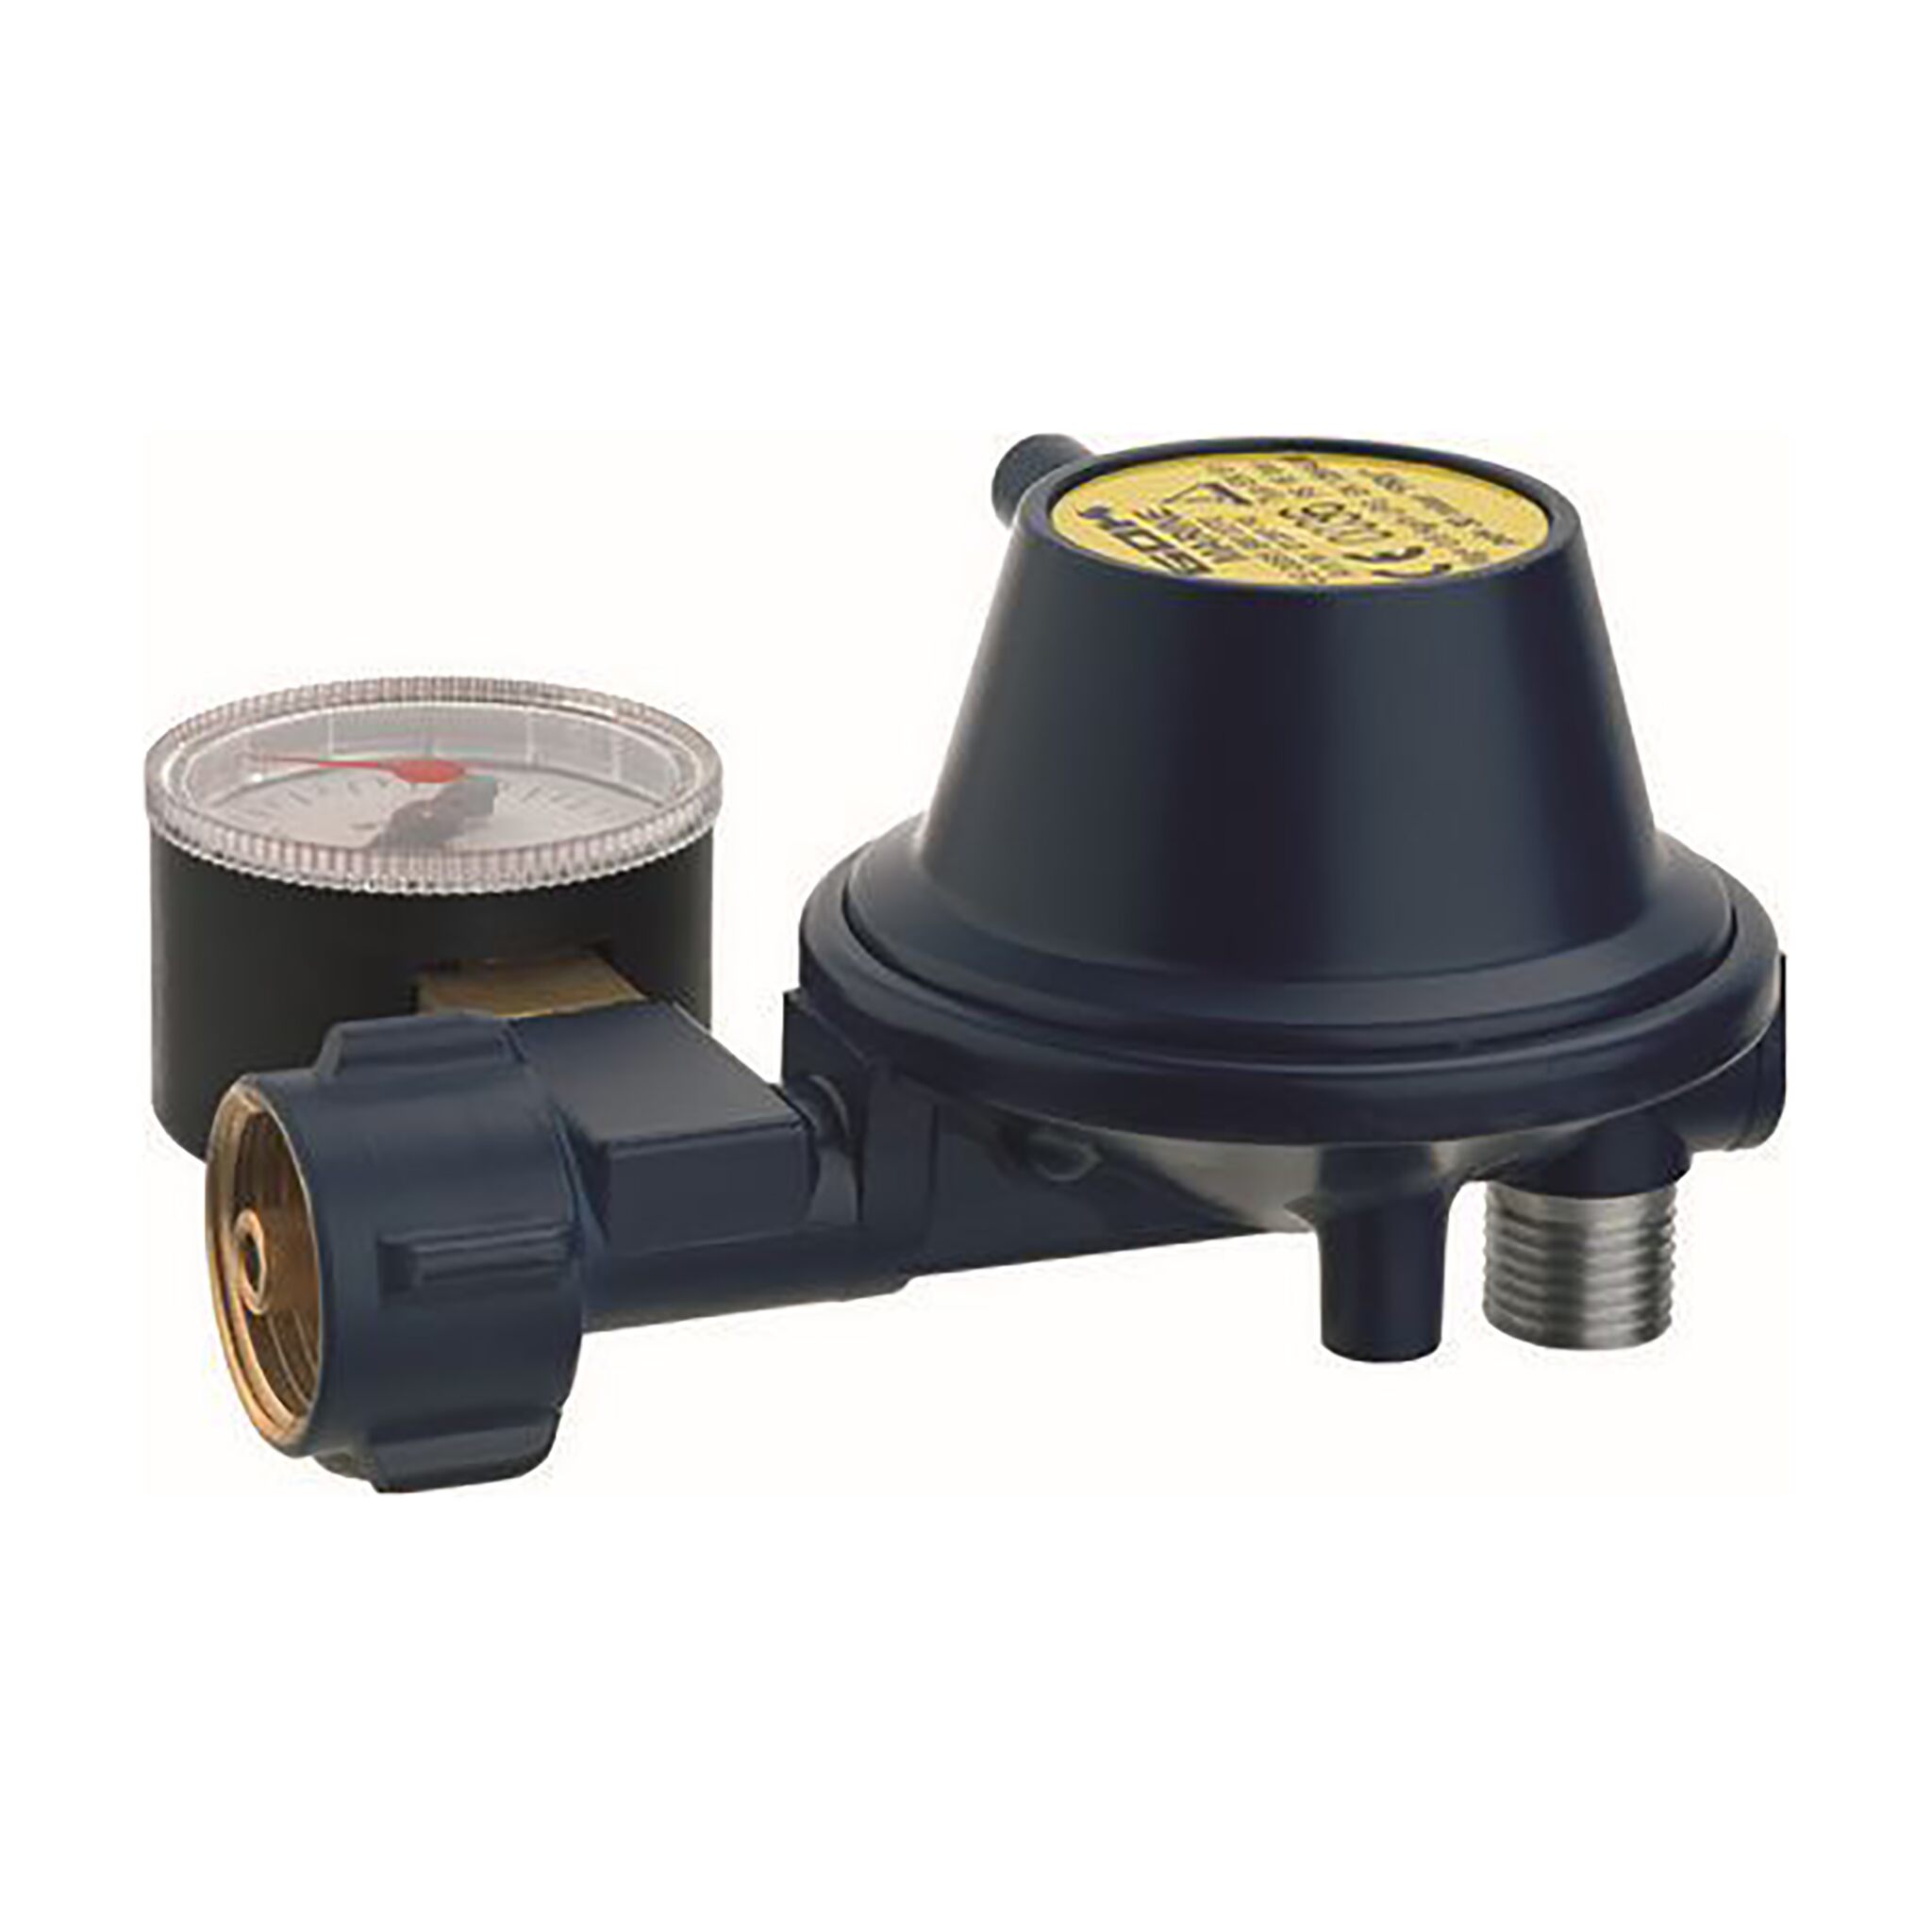 GOK 30mbar low pressure regulator